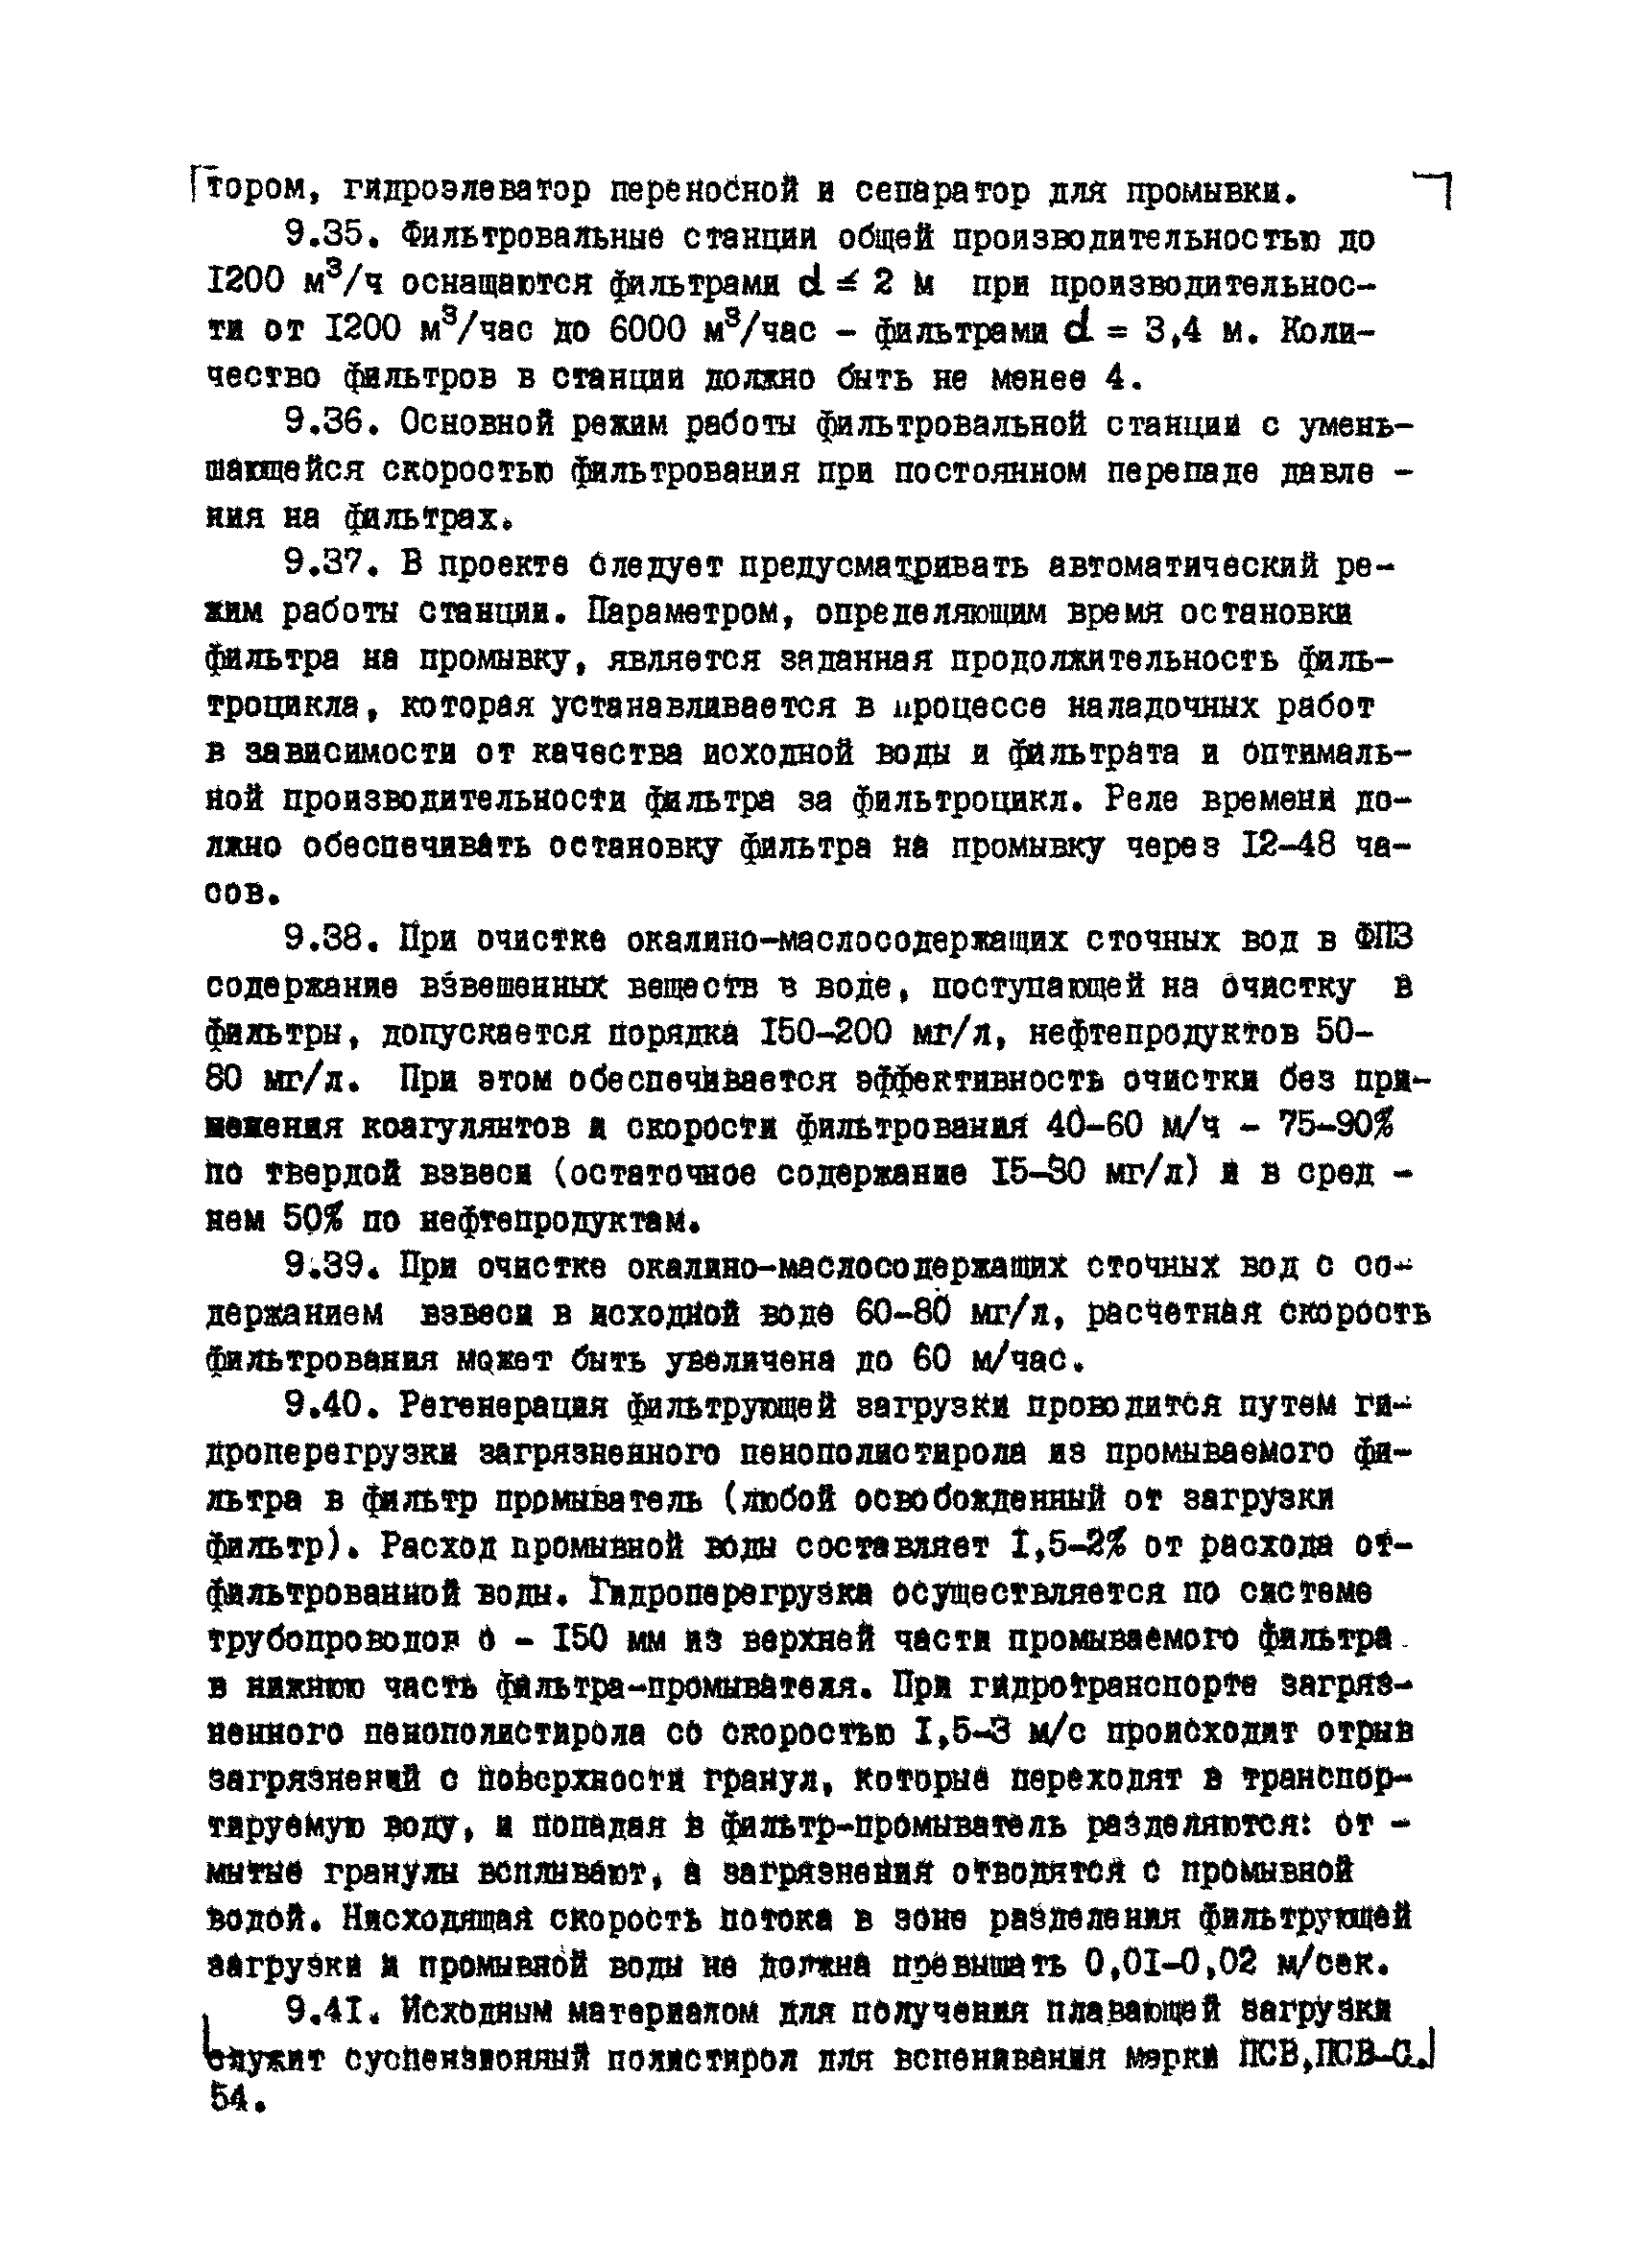 ВНТМ/МЧМ СССР 1-37-80